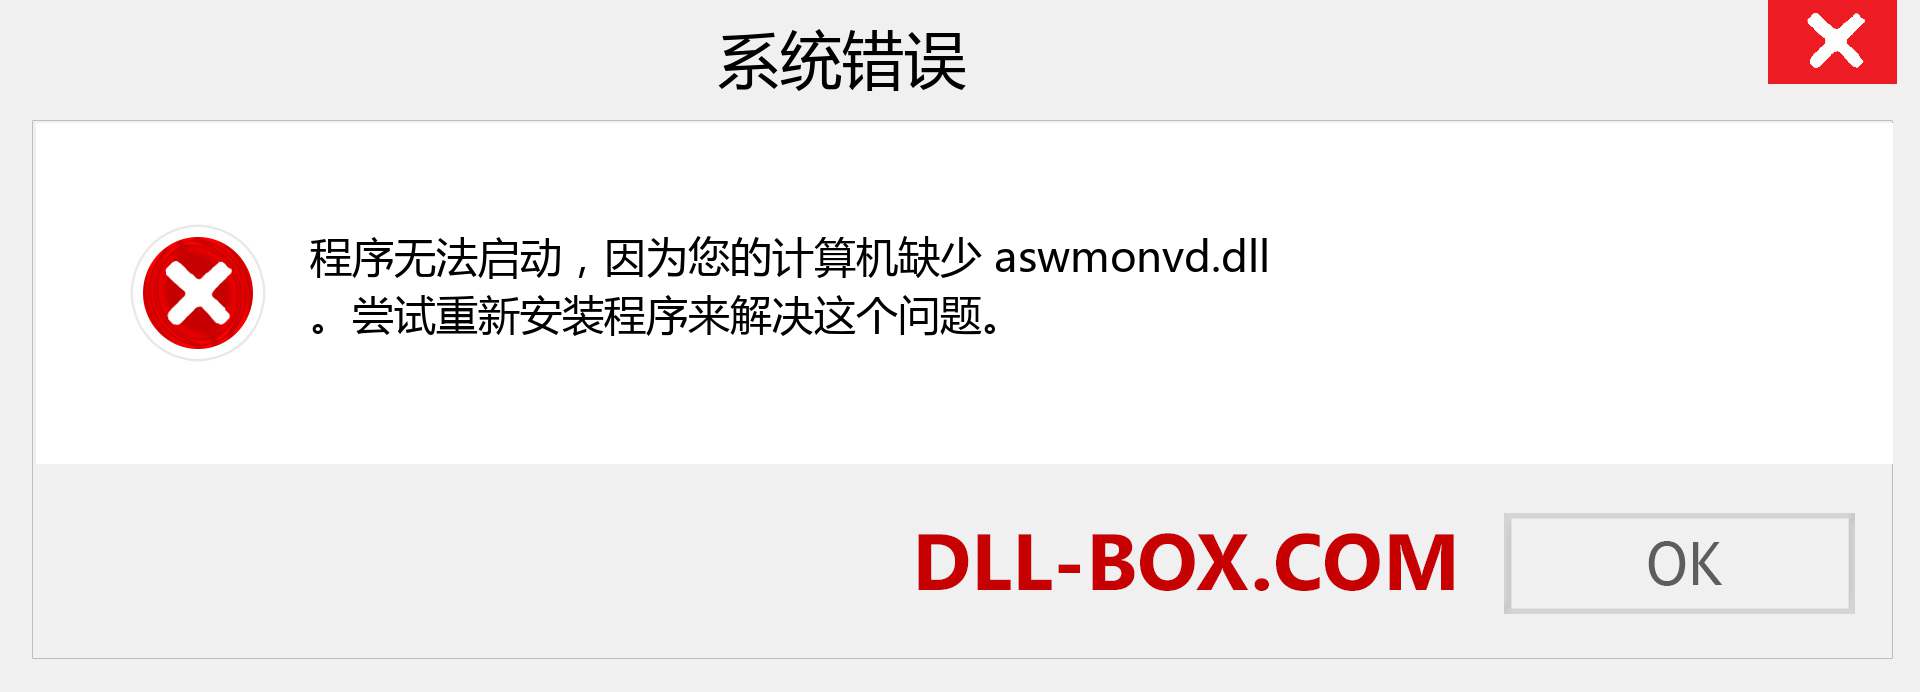 aswmonvd.dll 文件丢失？。 适用于 Windows 7、8、10 的下载 - 修复 Windows、照片、图像上的 aswmonvd dll 丢失错误